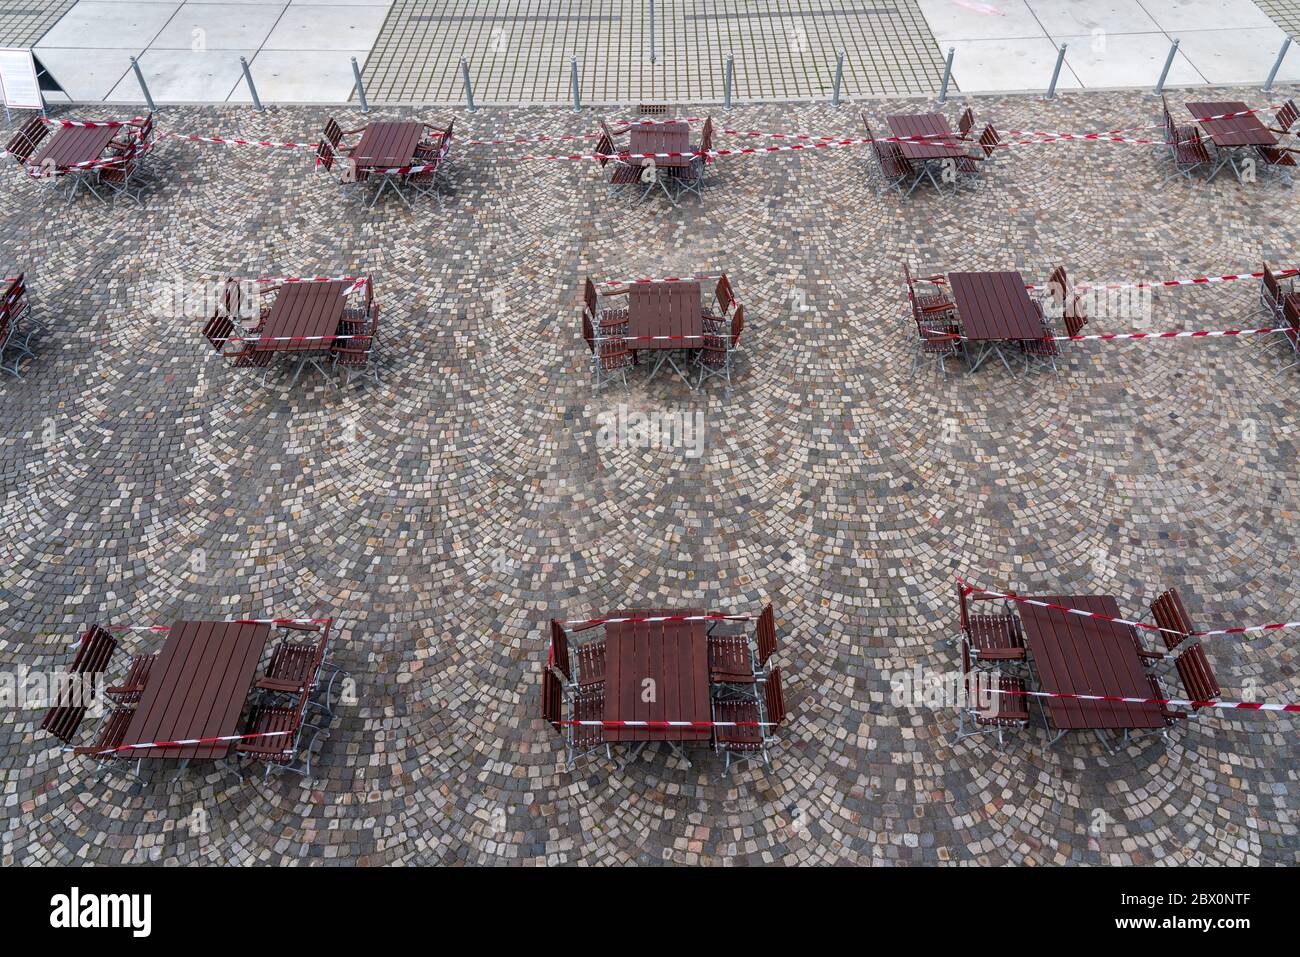 Gastronomie pendant la crise de Corona, tables fermées dans le jardin de bière, Essen, région de Ruhr, NRW, Allemagne Banque D'Images